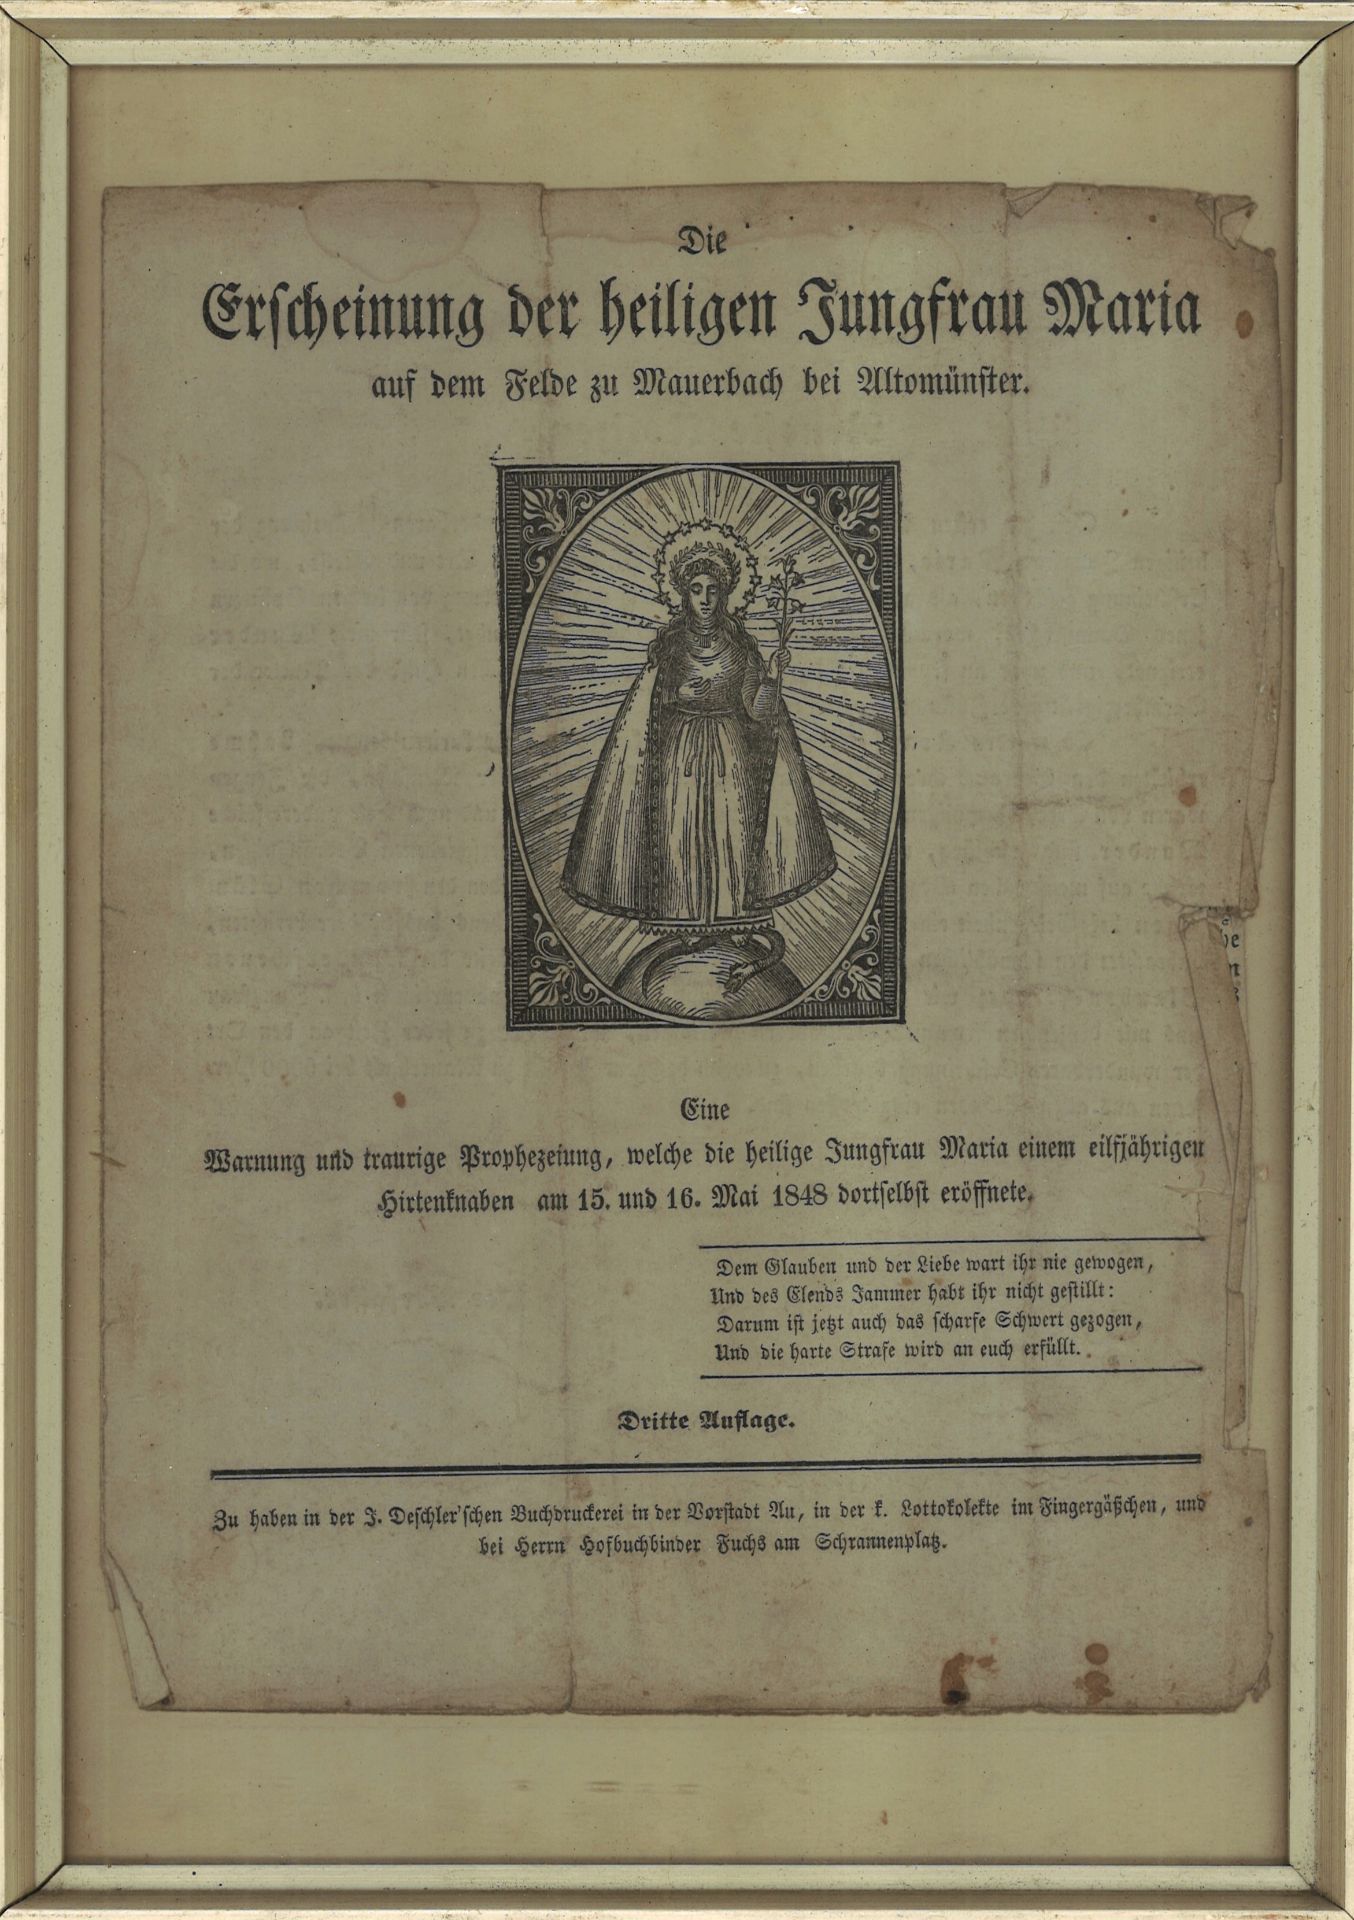 altes Verkündigungsblatt "Erscheinung der heiligen Jungfrau Maria auf dem Felde zu Mauerbach bei